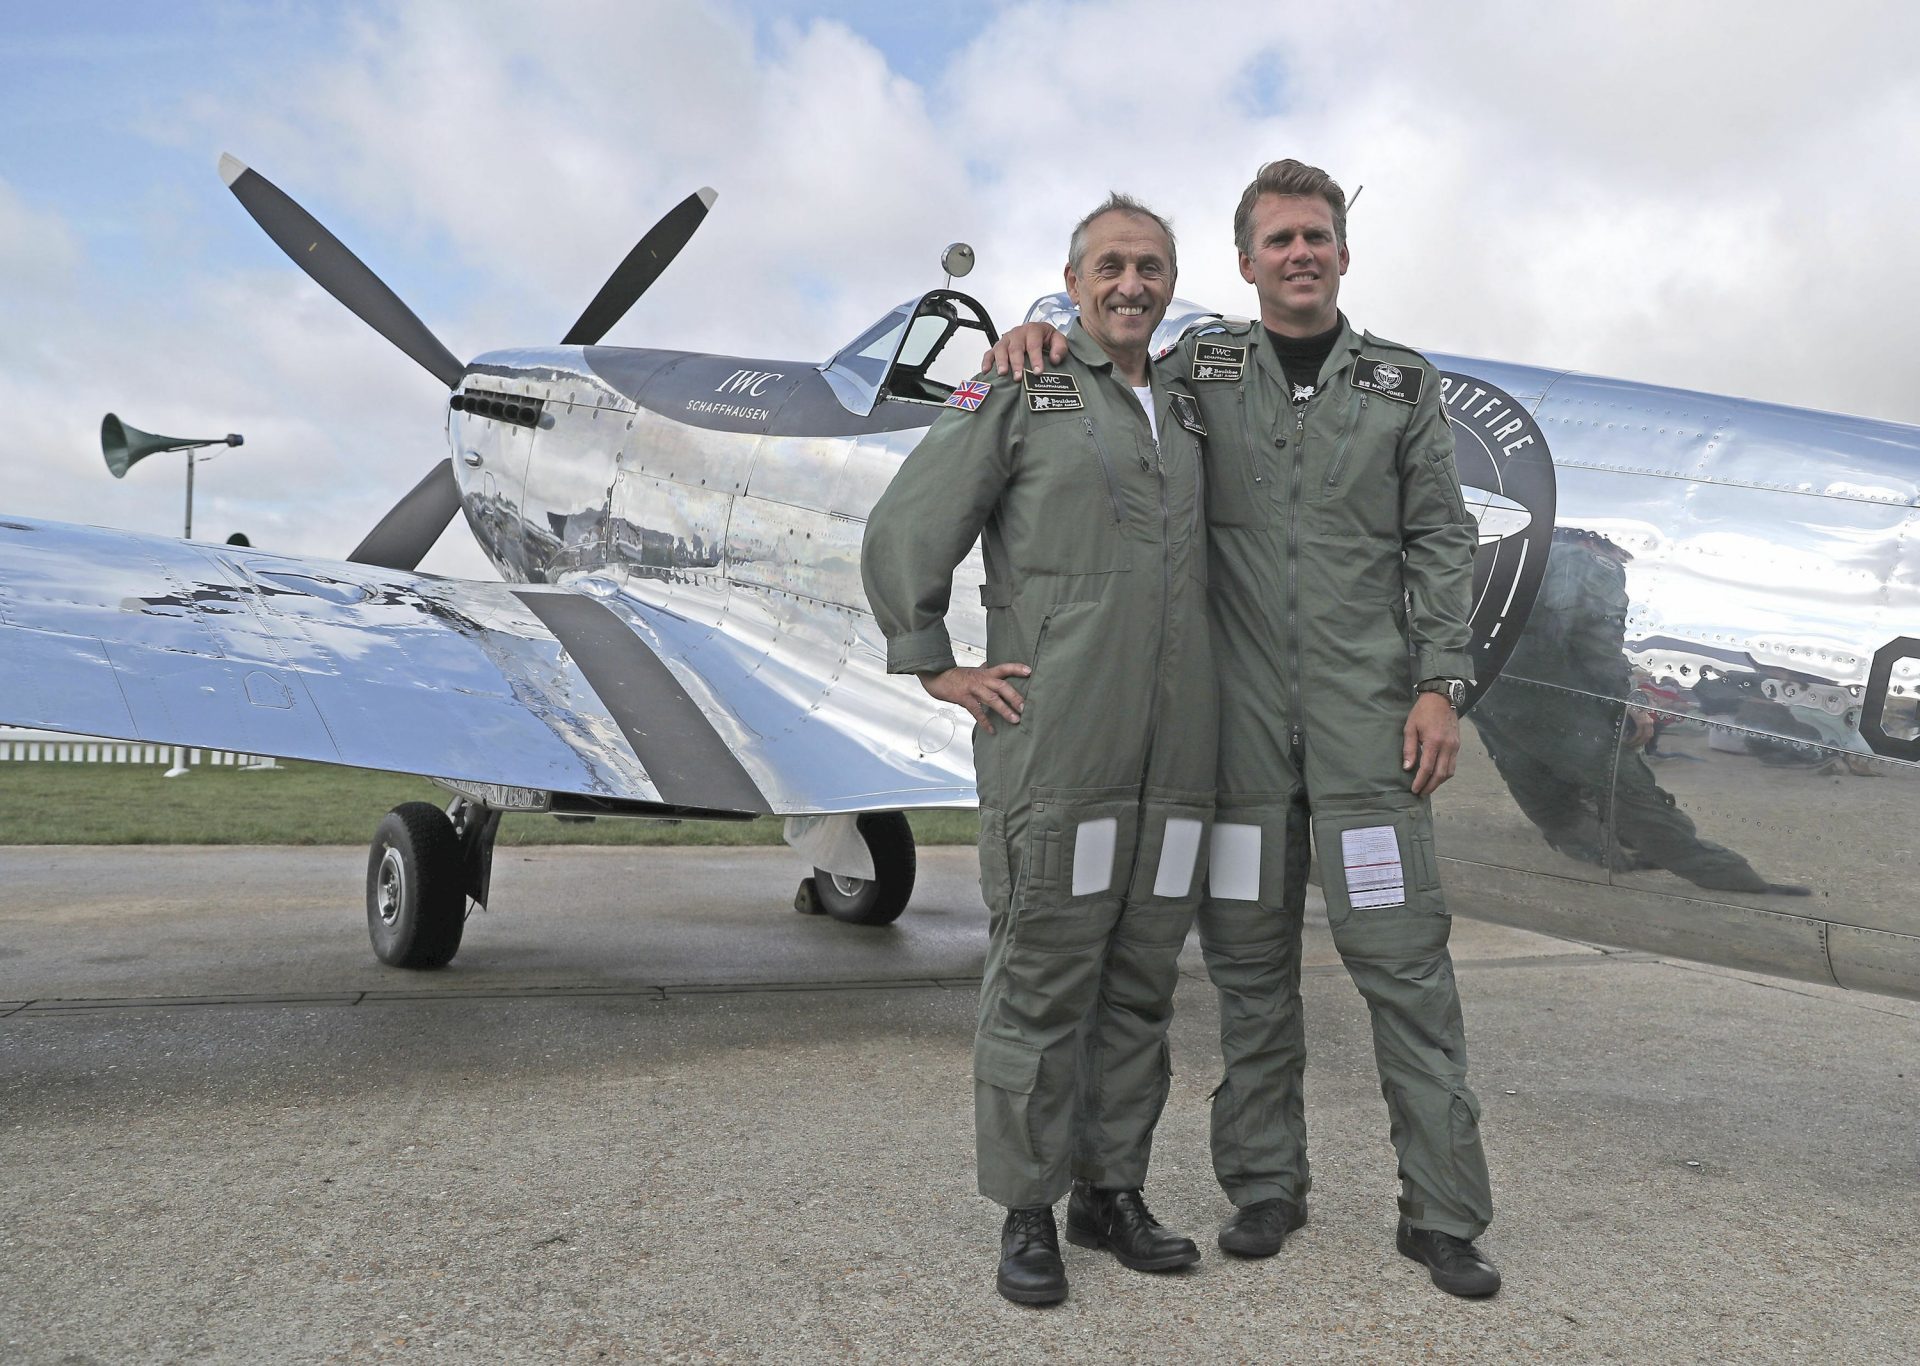 Restored World War II Spitfire begins round-the-world trip